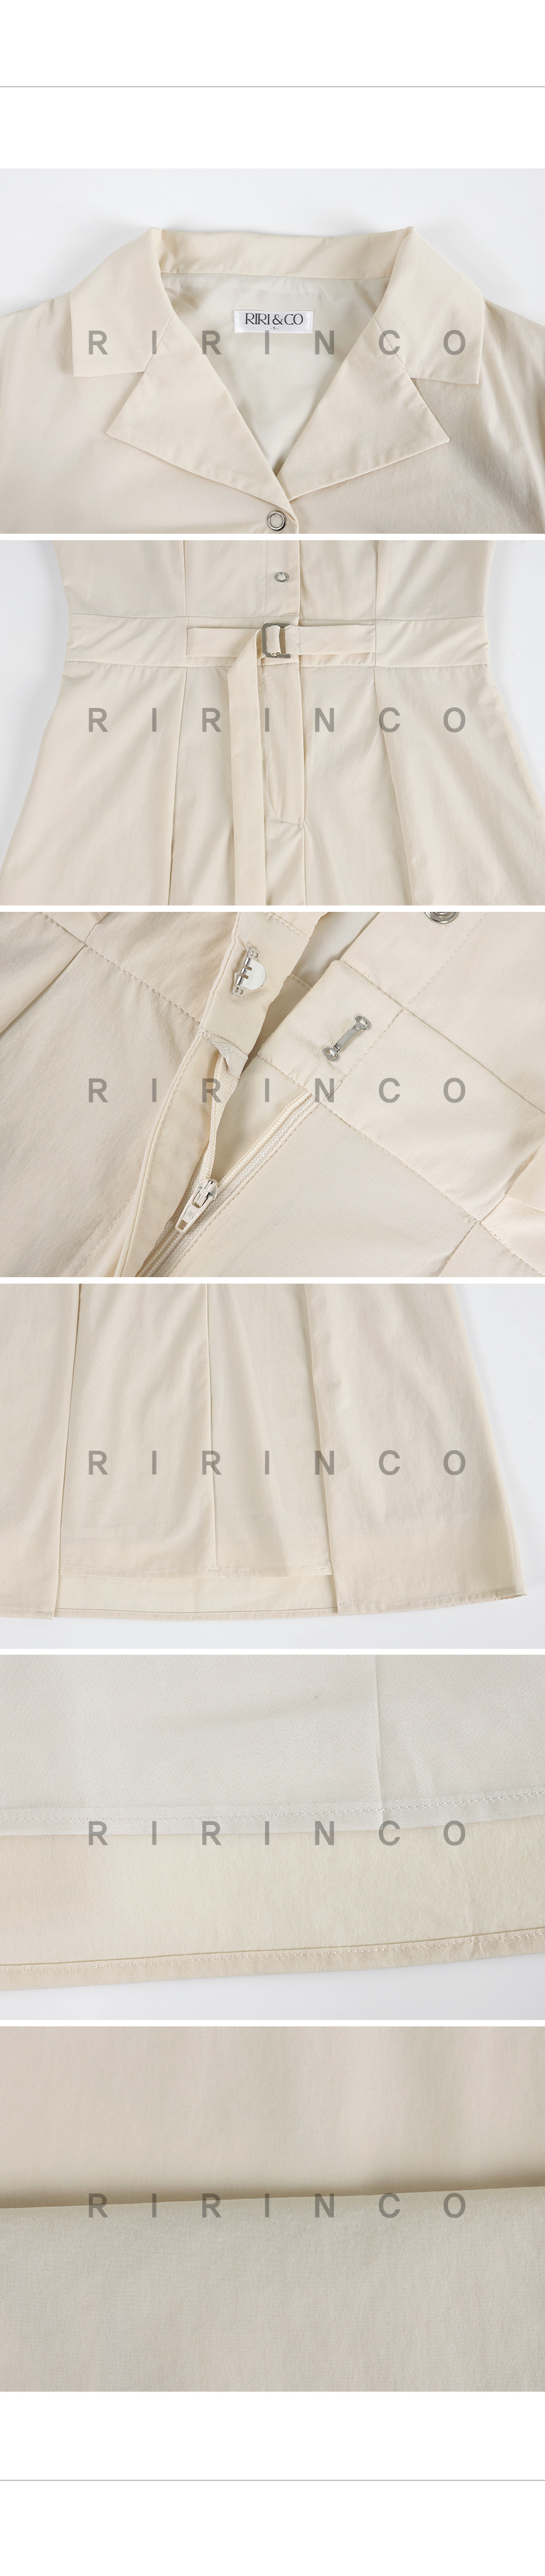 RIRINCO オープンカラーネックベルト付きミニワンピース